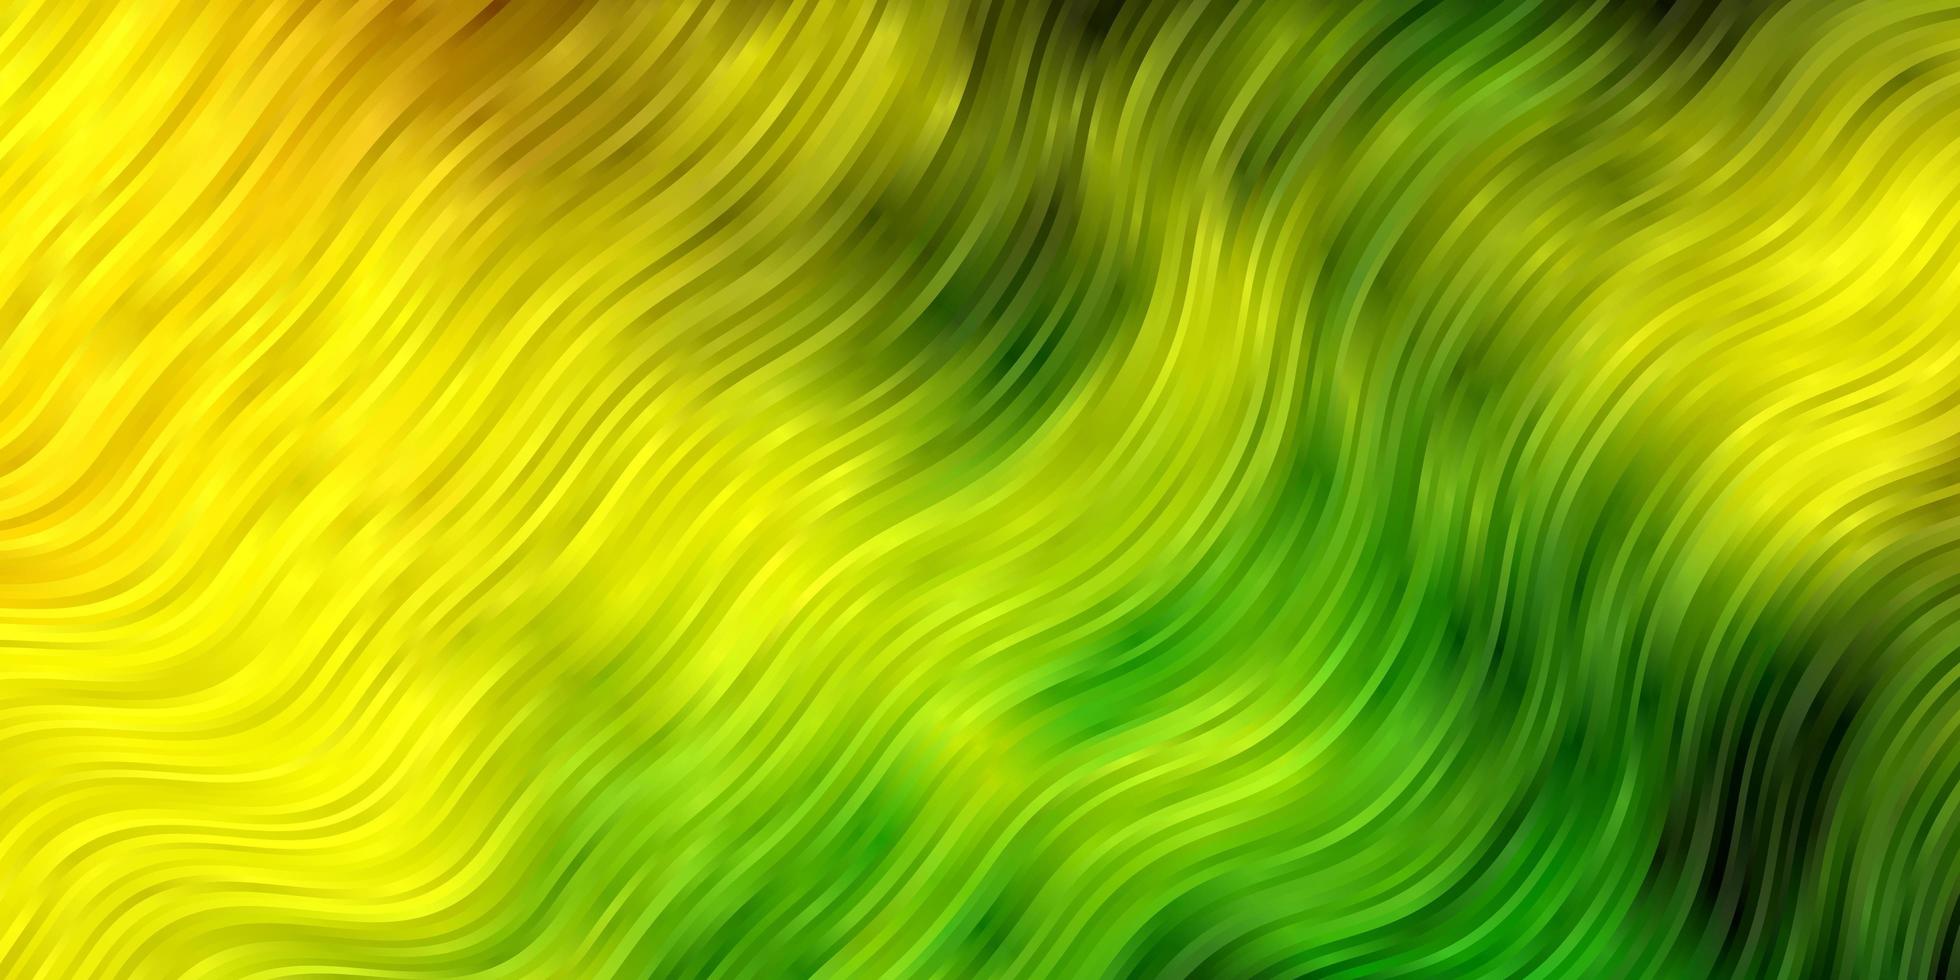 sfondo vettoriale giallo verde chiaro con linee ironiche